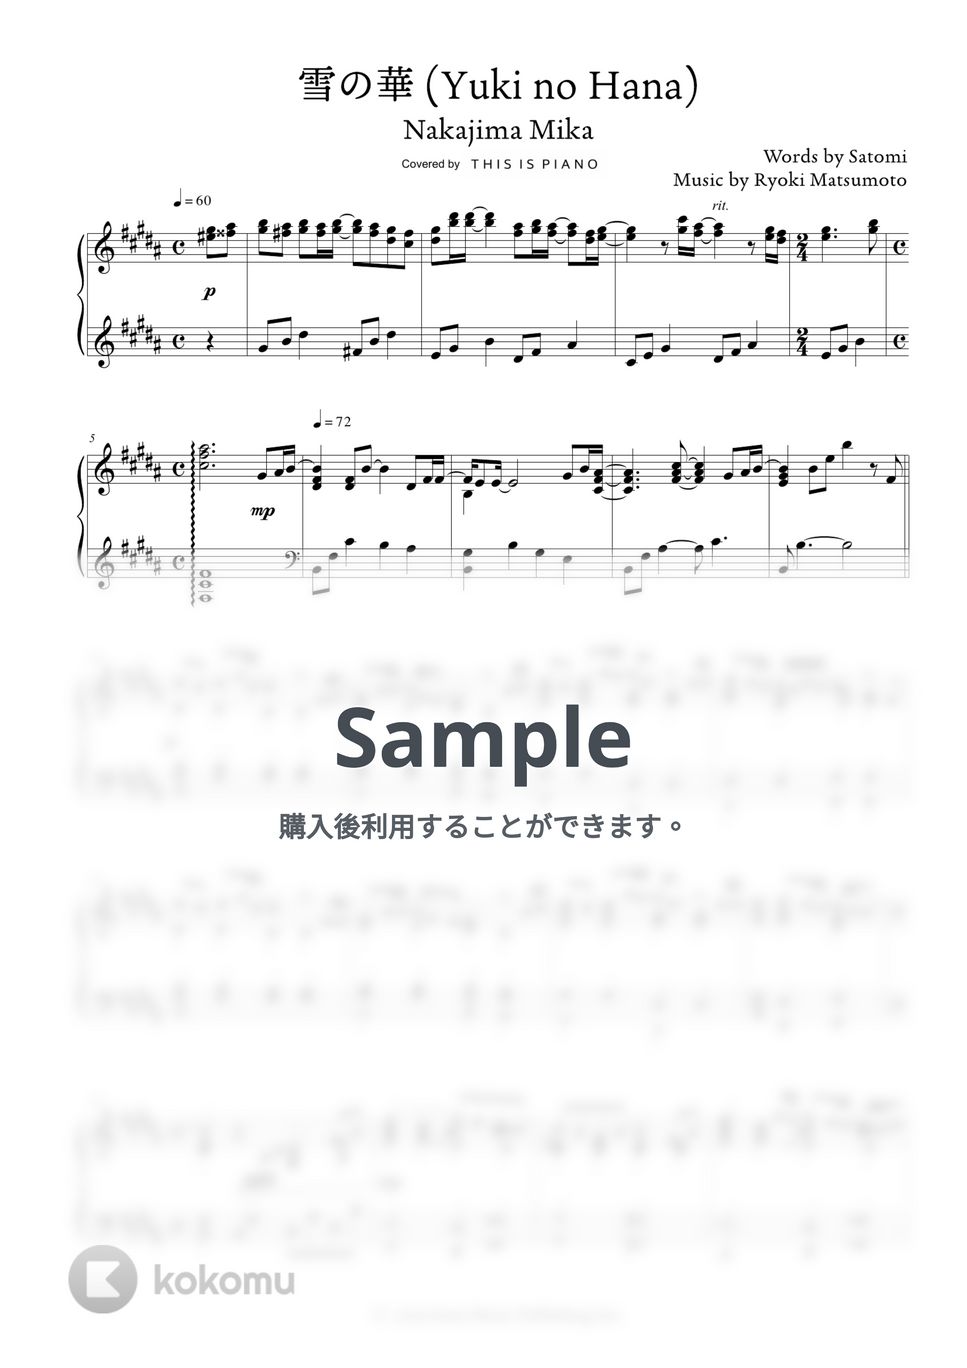 中島美嘉 - 雪の華 by THIS IS PIANO